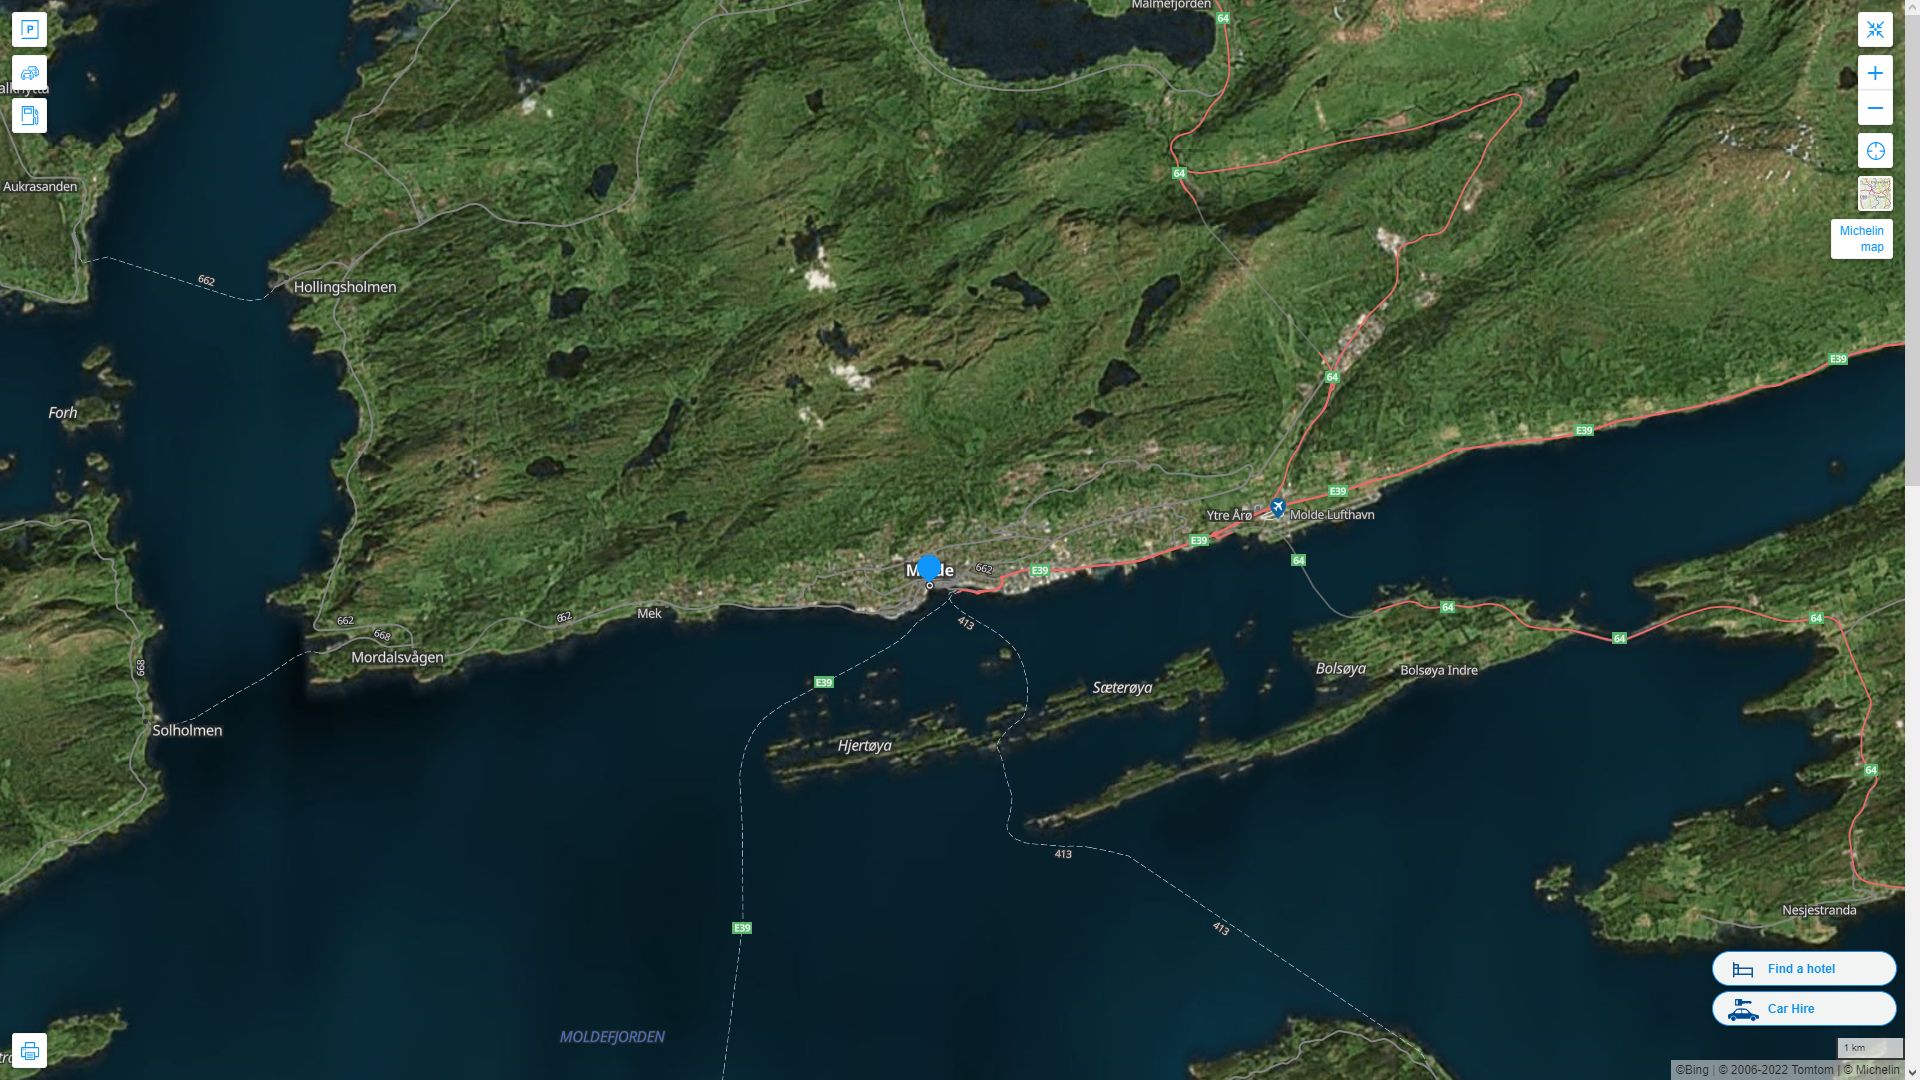 Molde Norvege Autoroute et carte routiere avec vue satellite